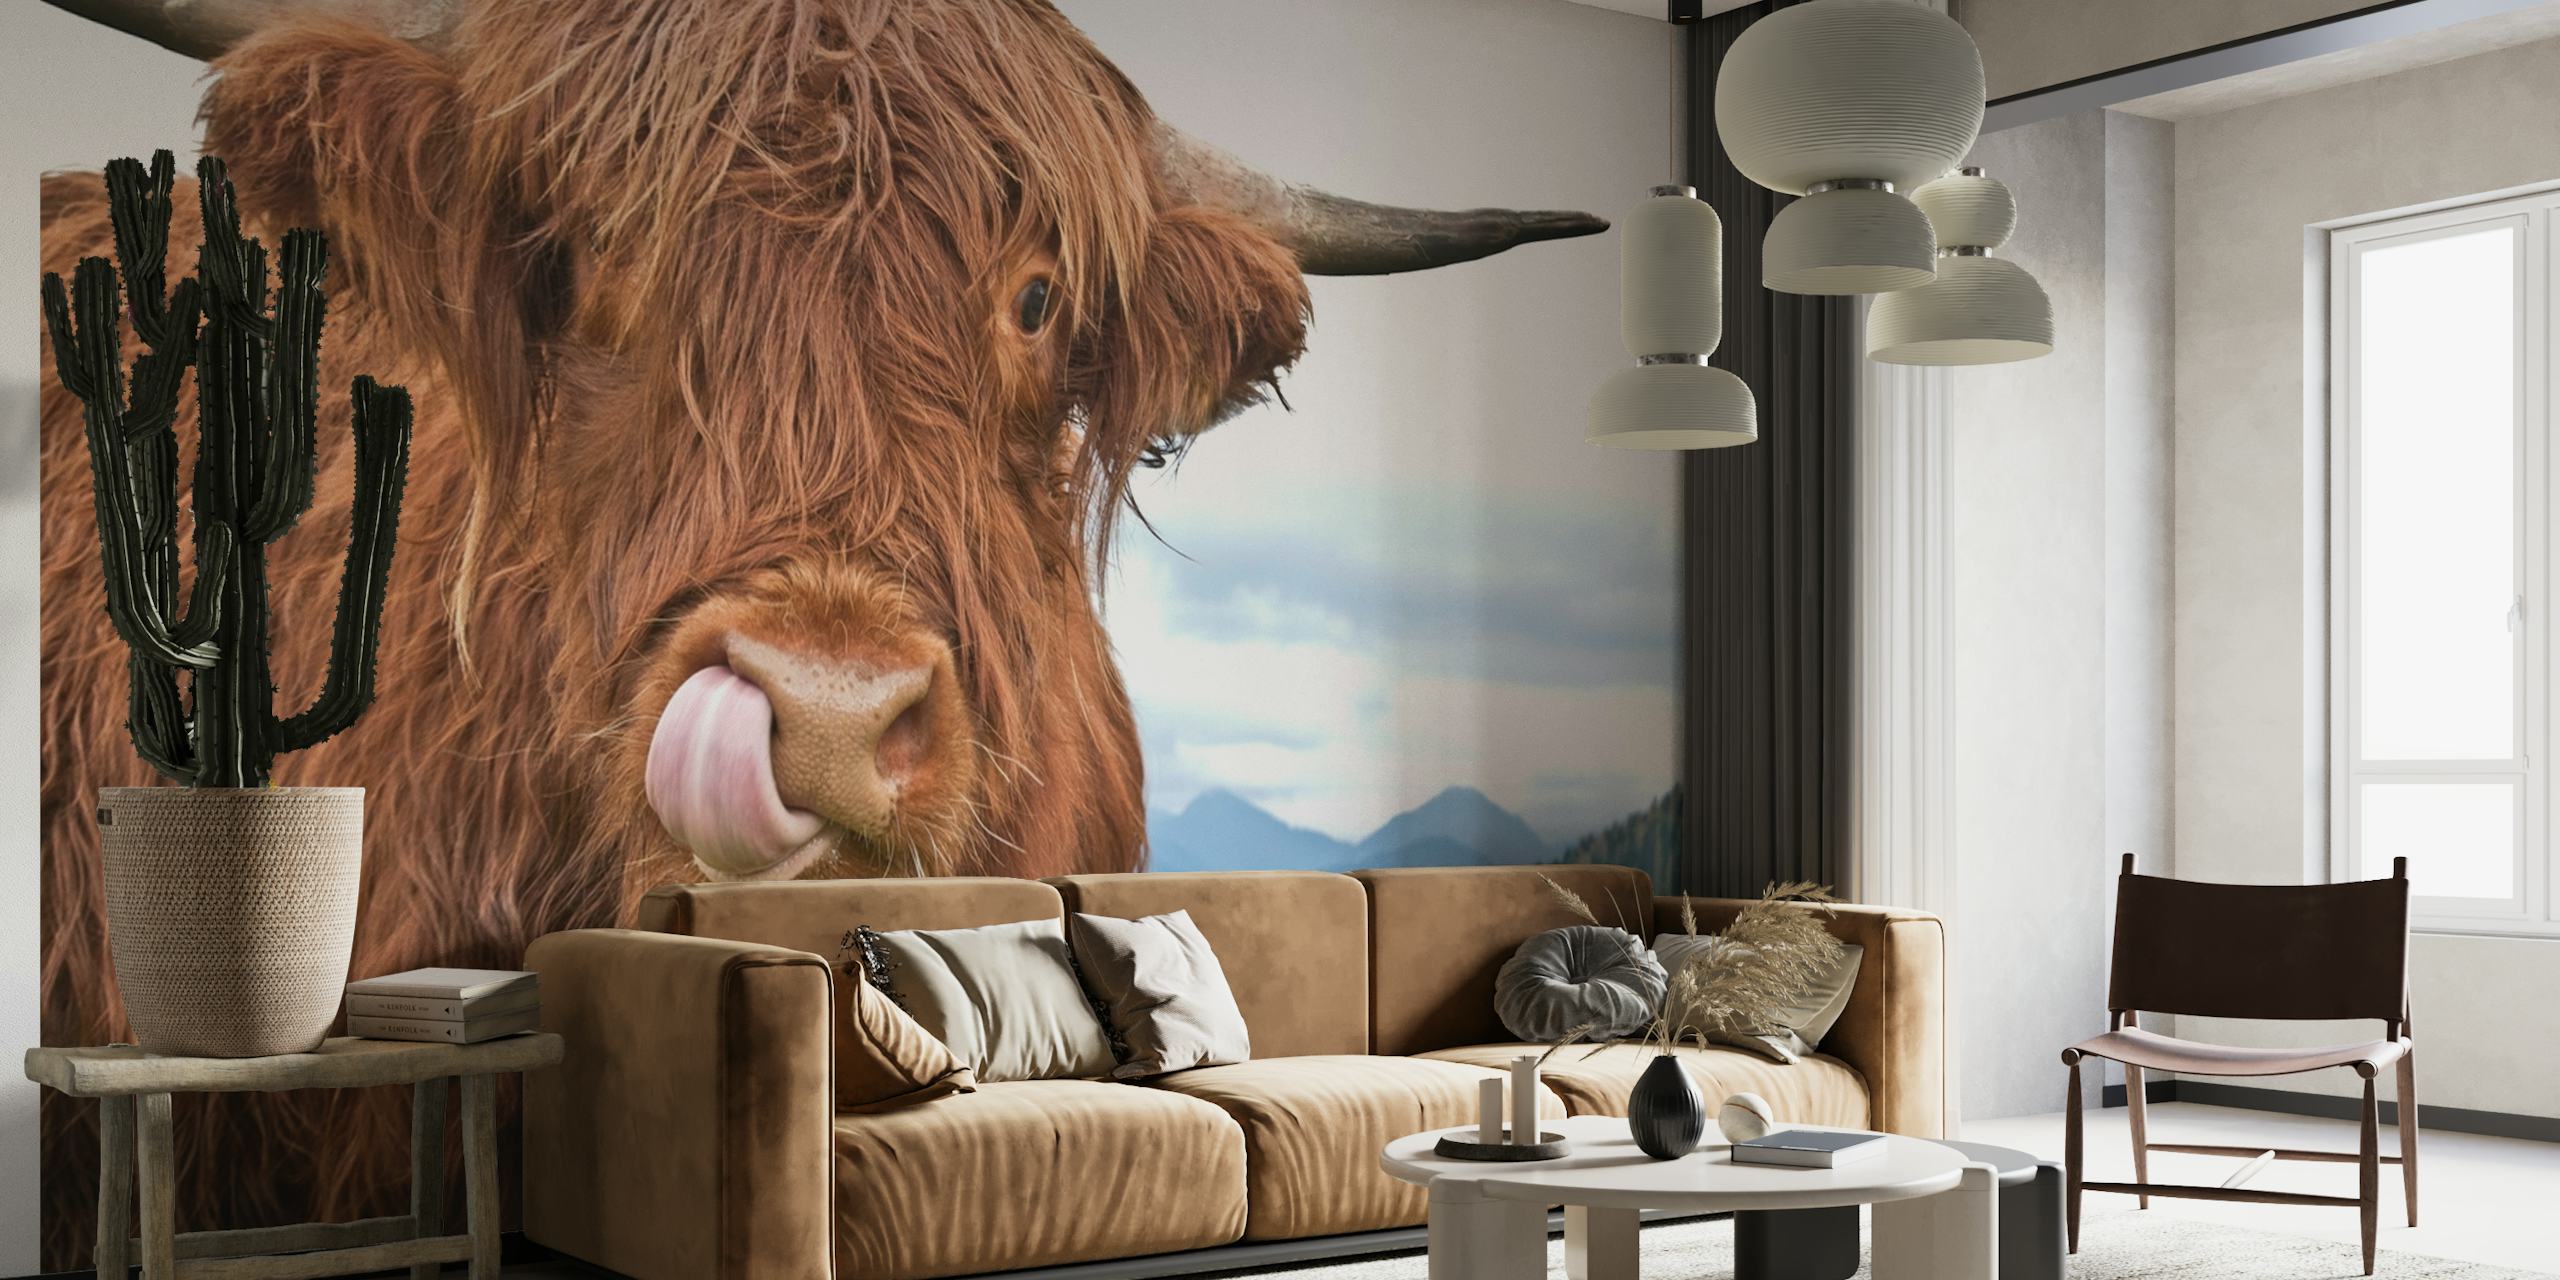 Vaca de las tierras altas con el pelo desgreñado sacando la lengua contra el paisaje como telón de fondo en un mural de pared